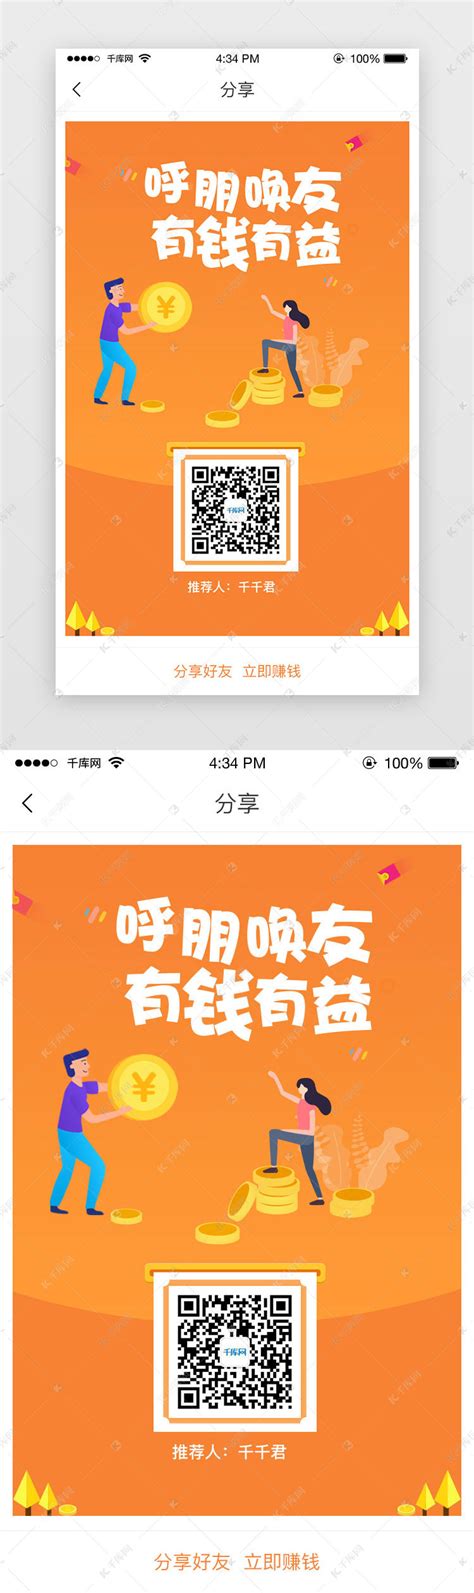 二维码推广海报_素材中国sccnn.com